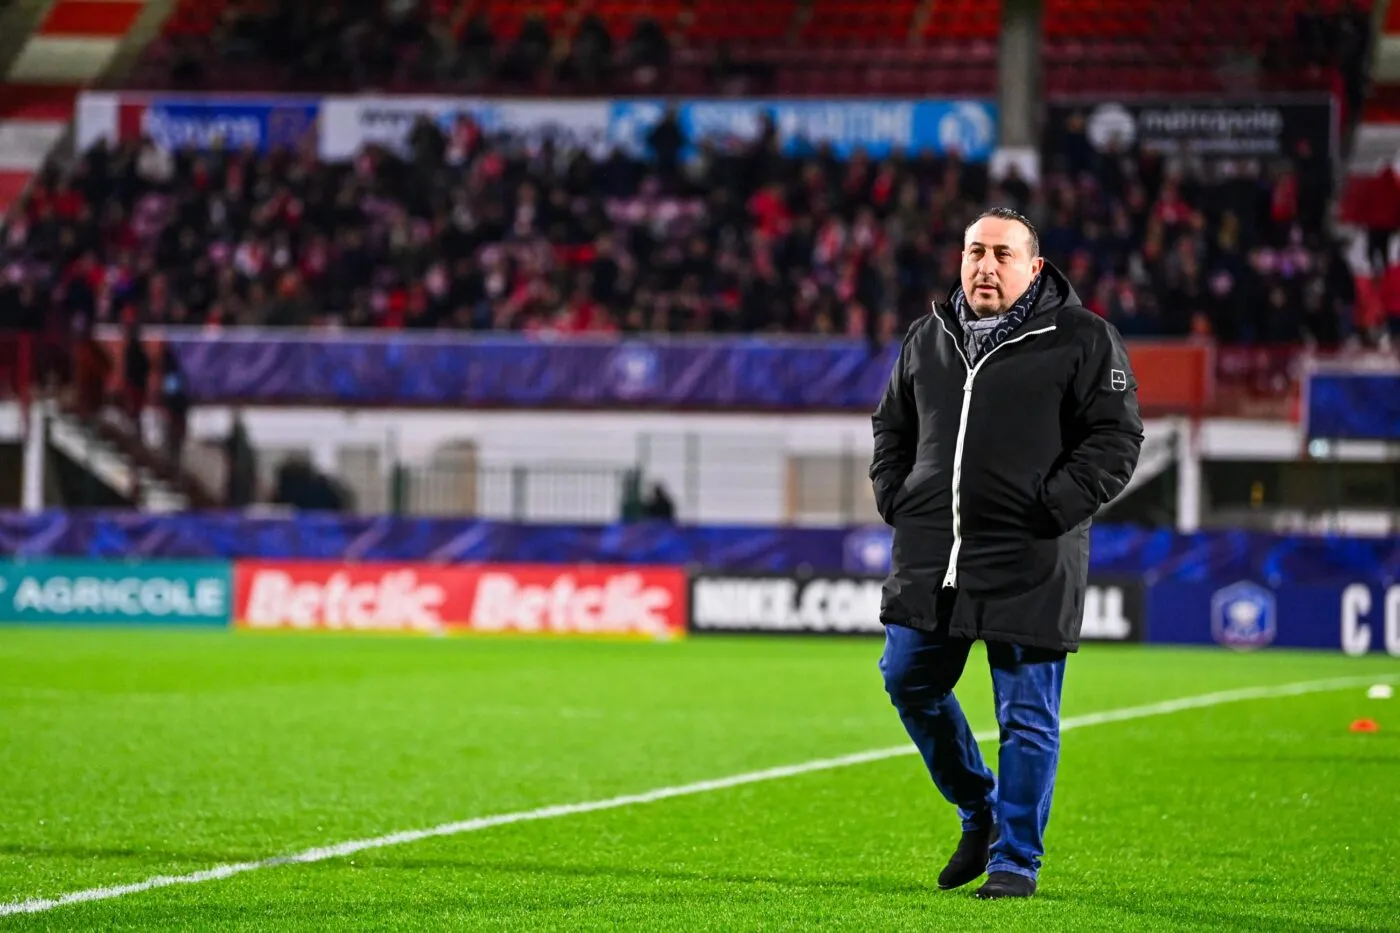 Le président du FC Rouen lance un appel pour la survie du club